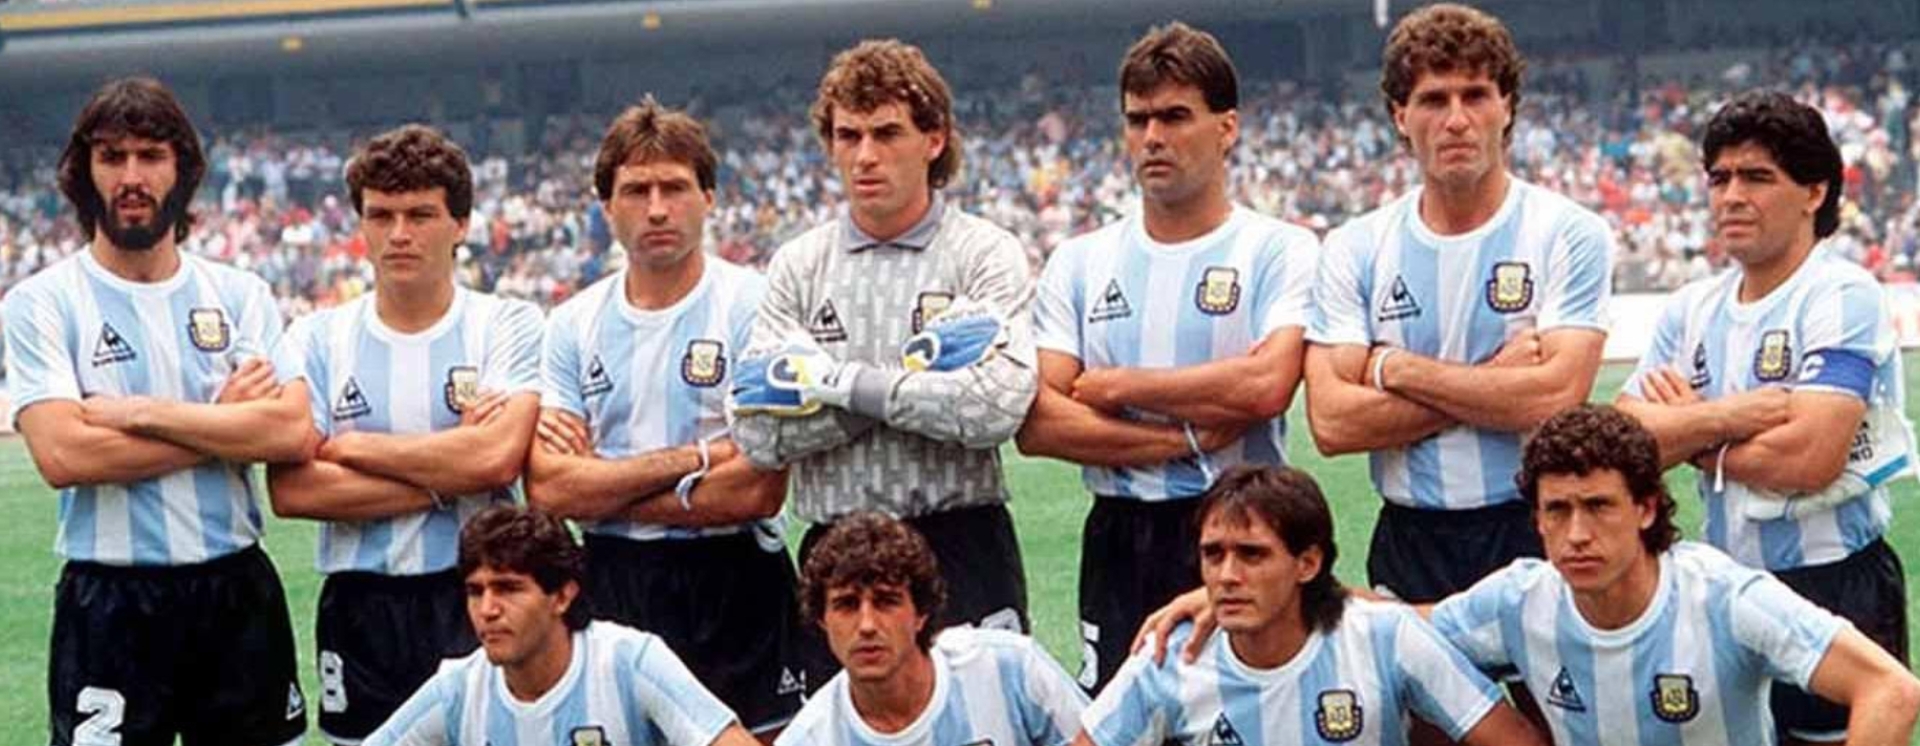 Αργεντινή 1986: Το Μουντιάλ του Μαραντόνα